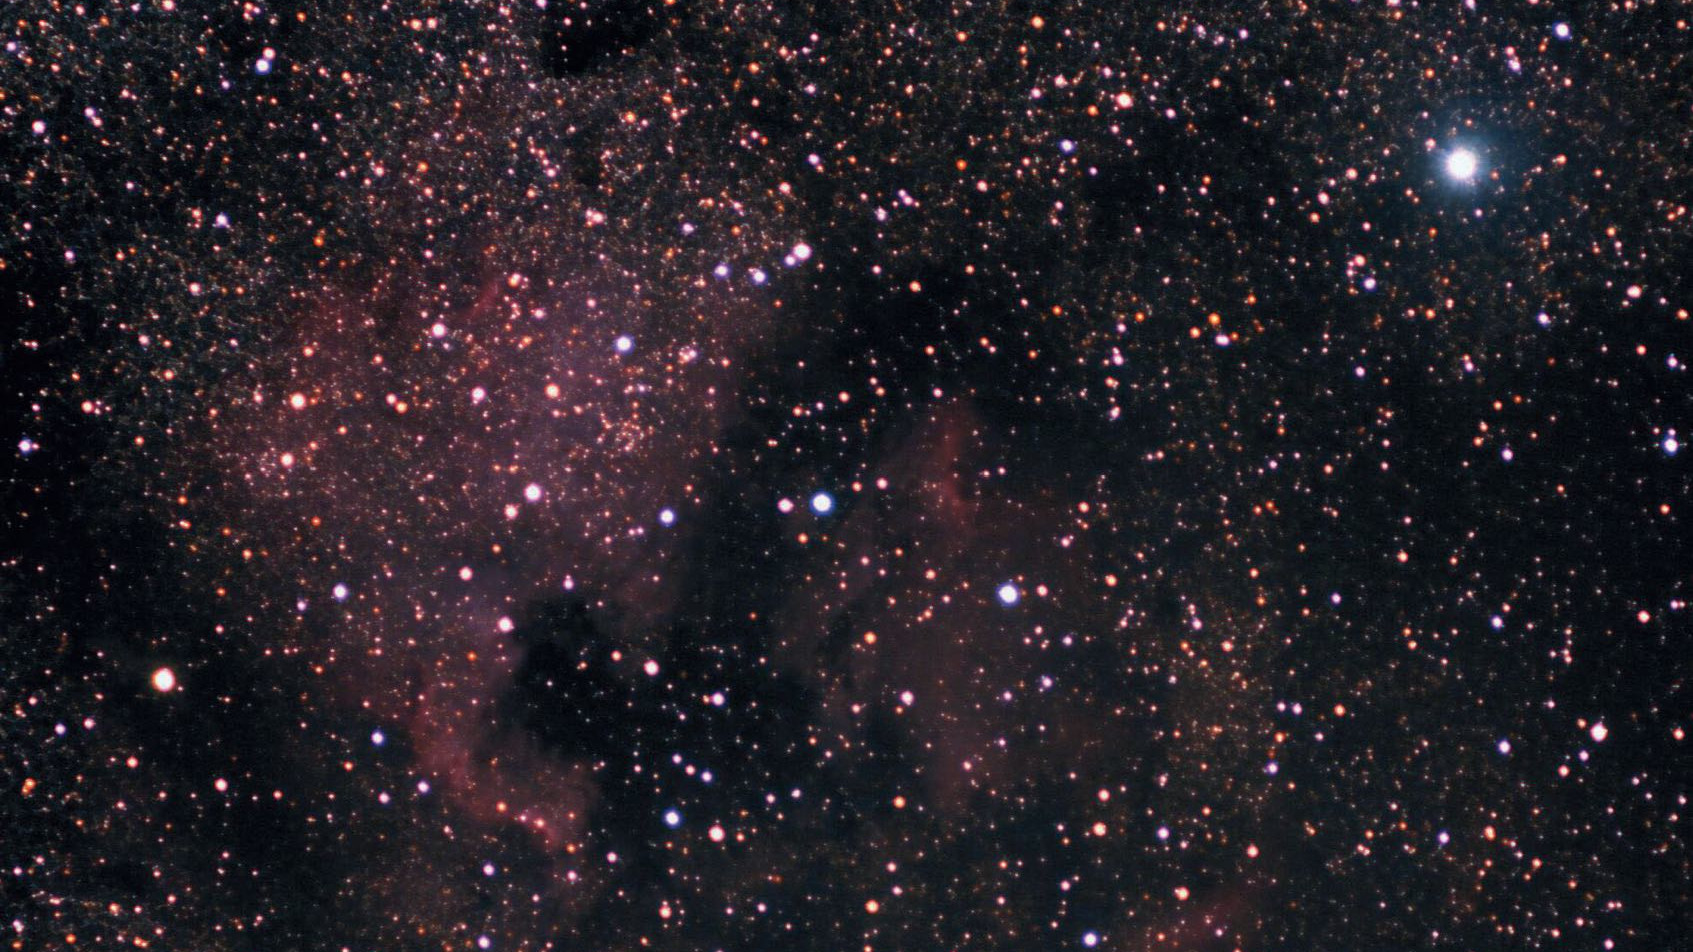 Al sureste de Deneb (la estrella más brillante que aparece en el cuadrante superior derecho) encontramos una de las nebulosas gaseosas más bellas: NGC 7000 o nebulosa de Norteamérica. Partiendo del centro de la constelación hacia la izquierda, o al este del golfo de México, encontramos a un Orión en miniatura. Marcus Degenkolbe